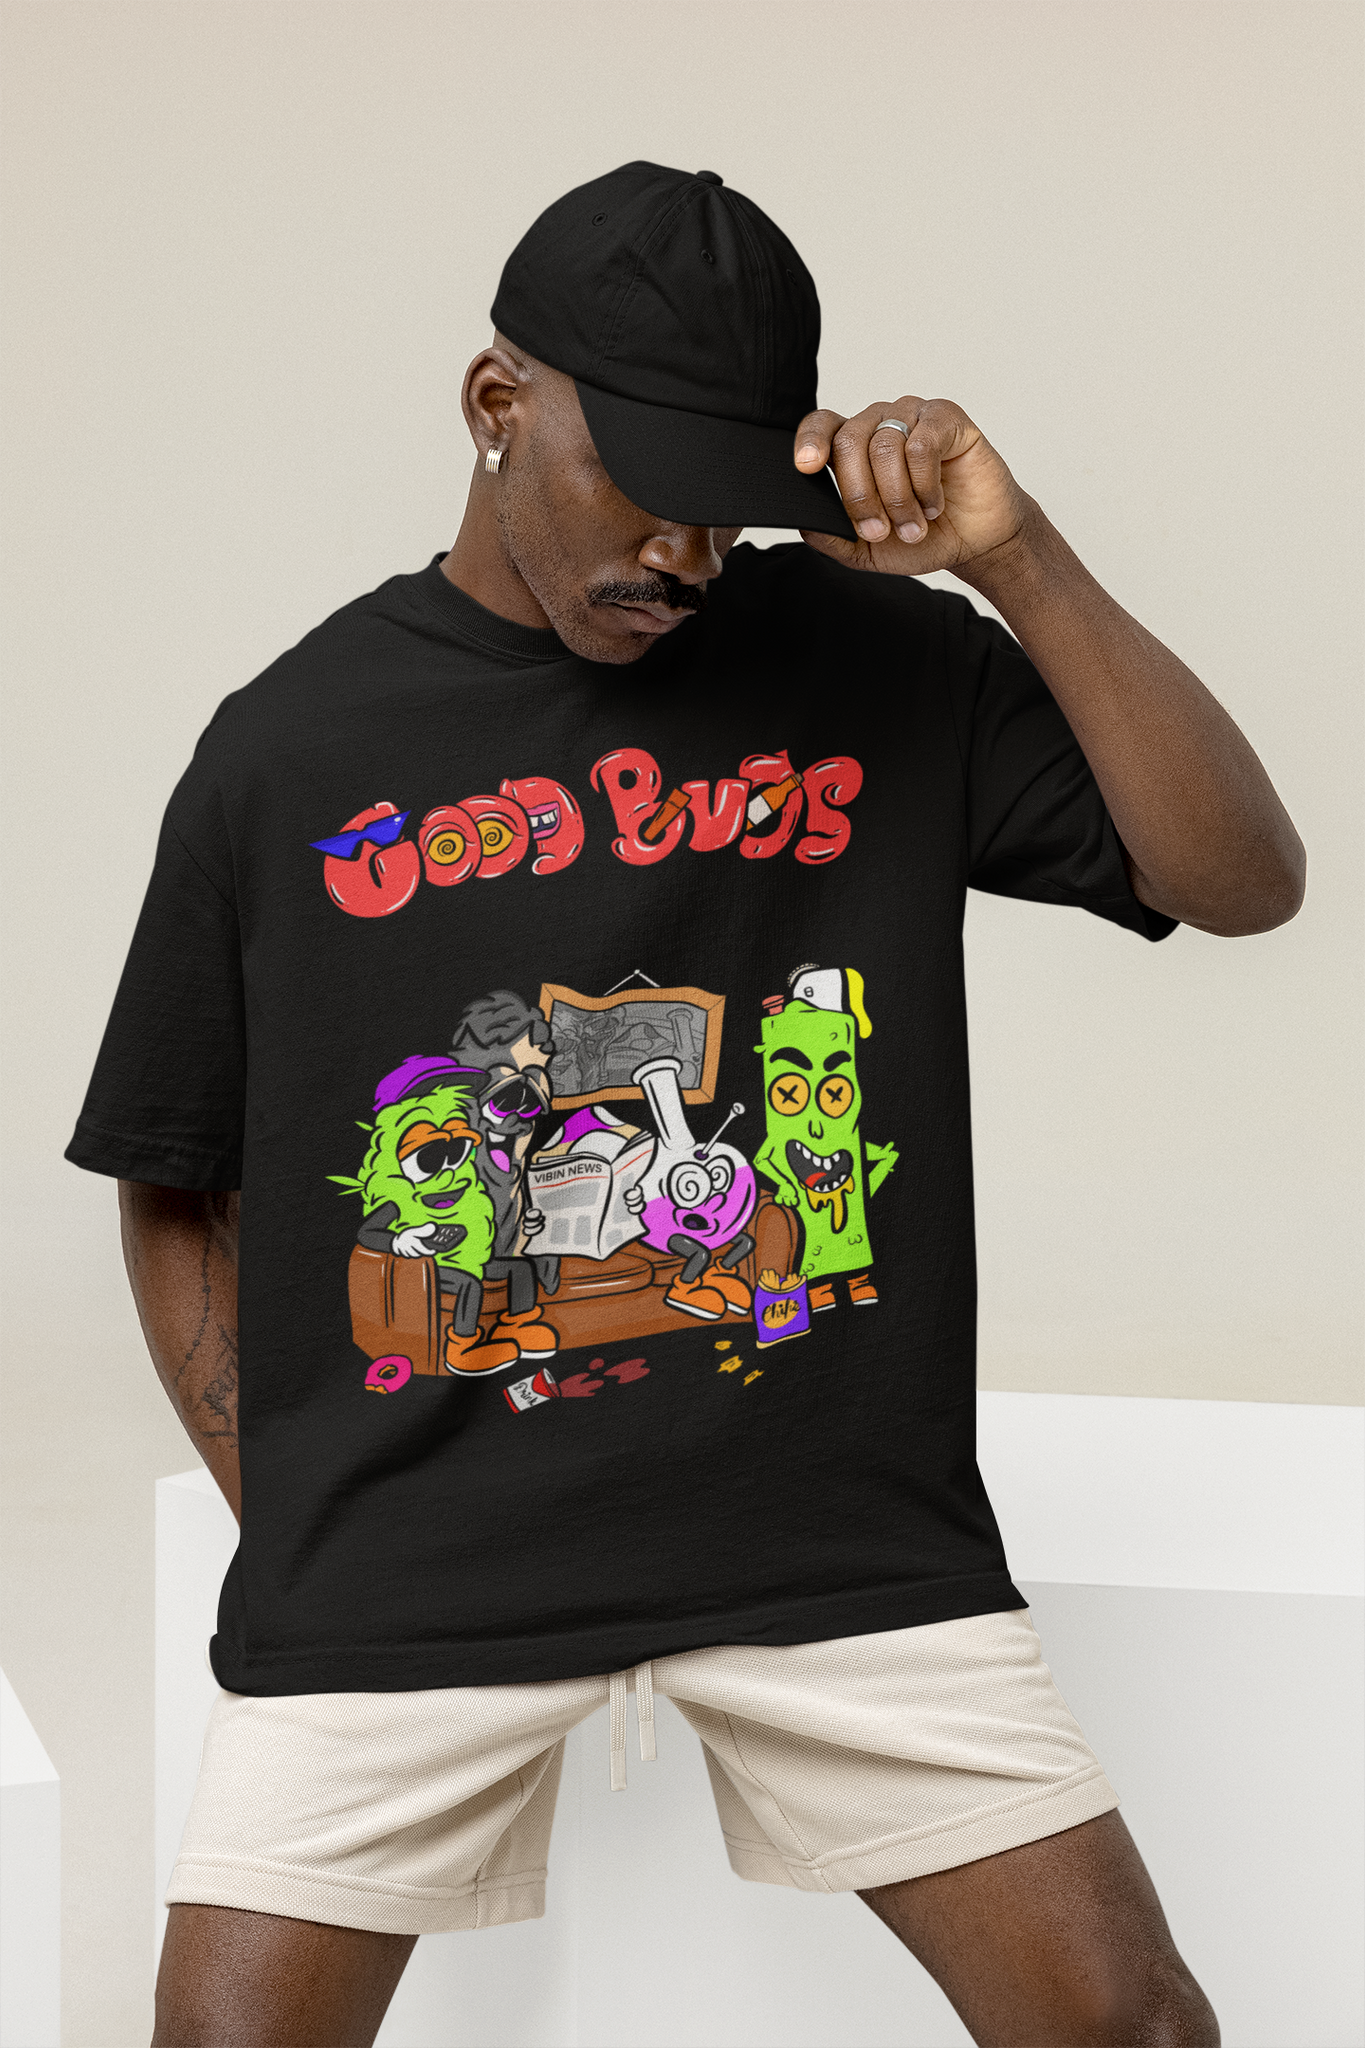 Good Buds Oversized T-Shirt